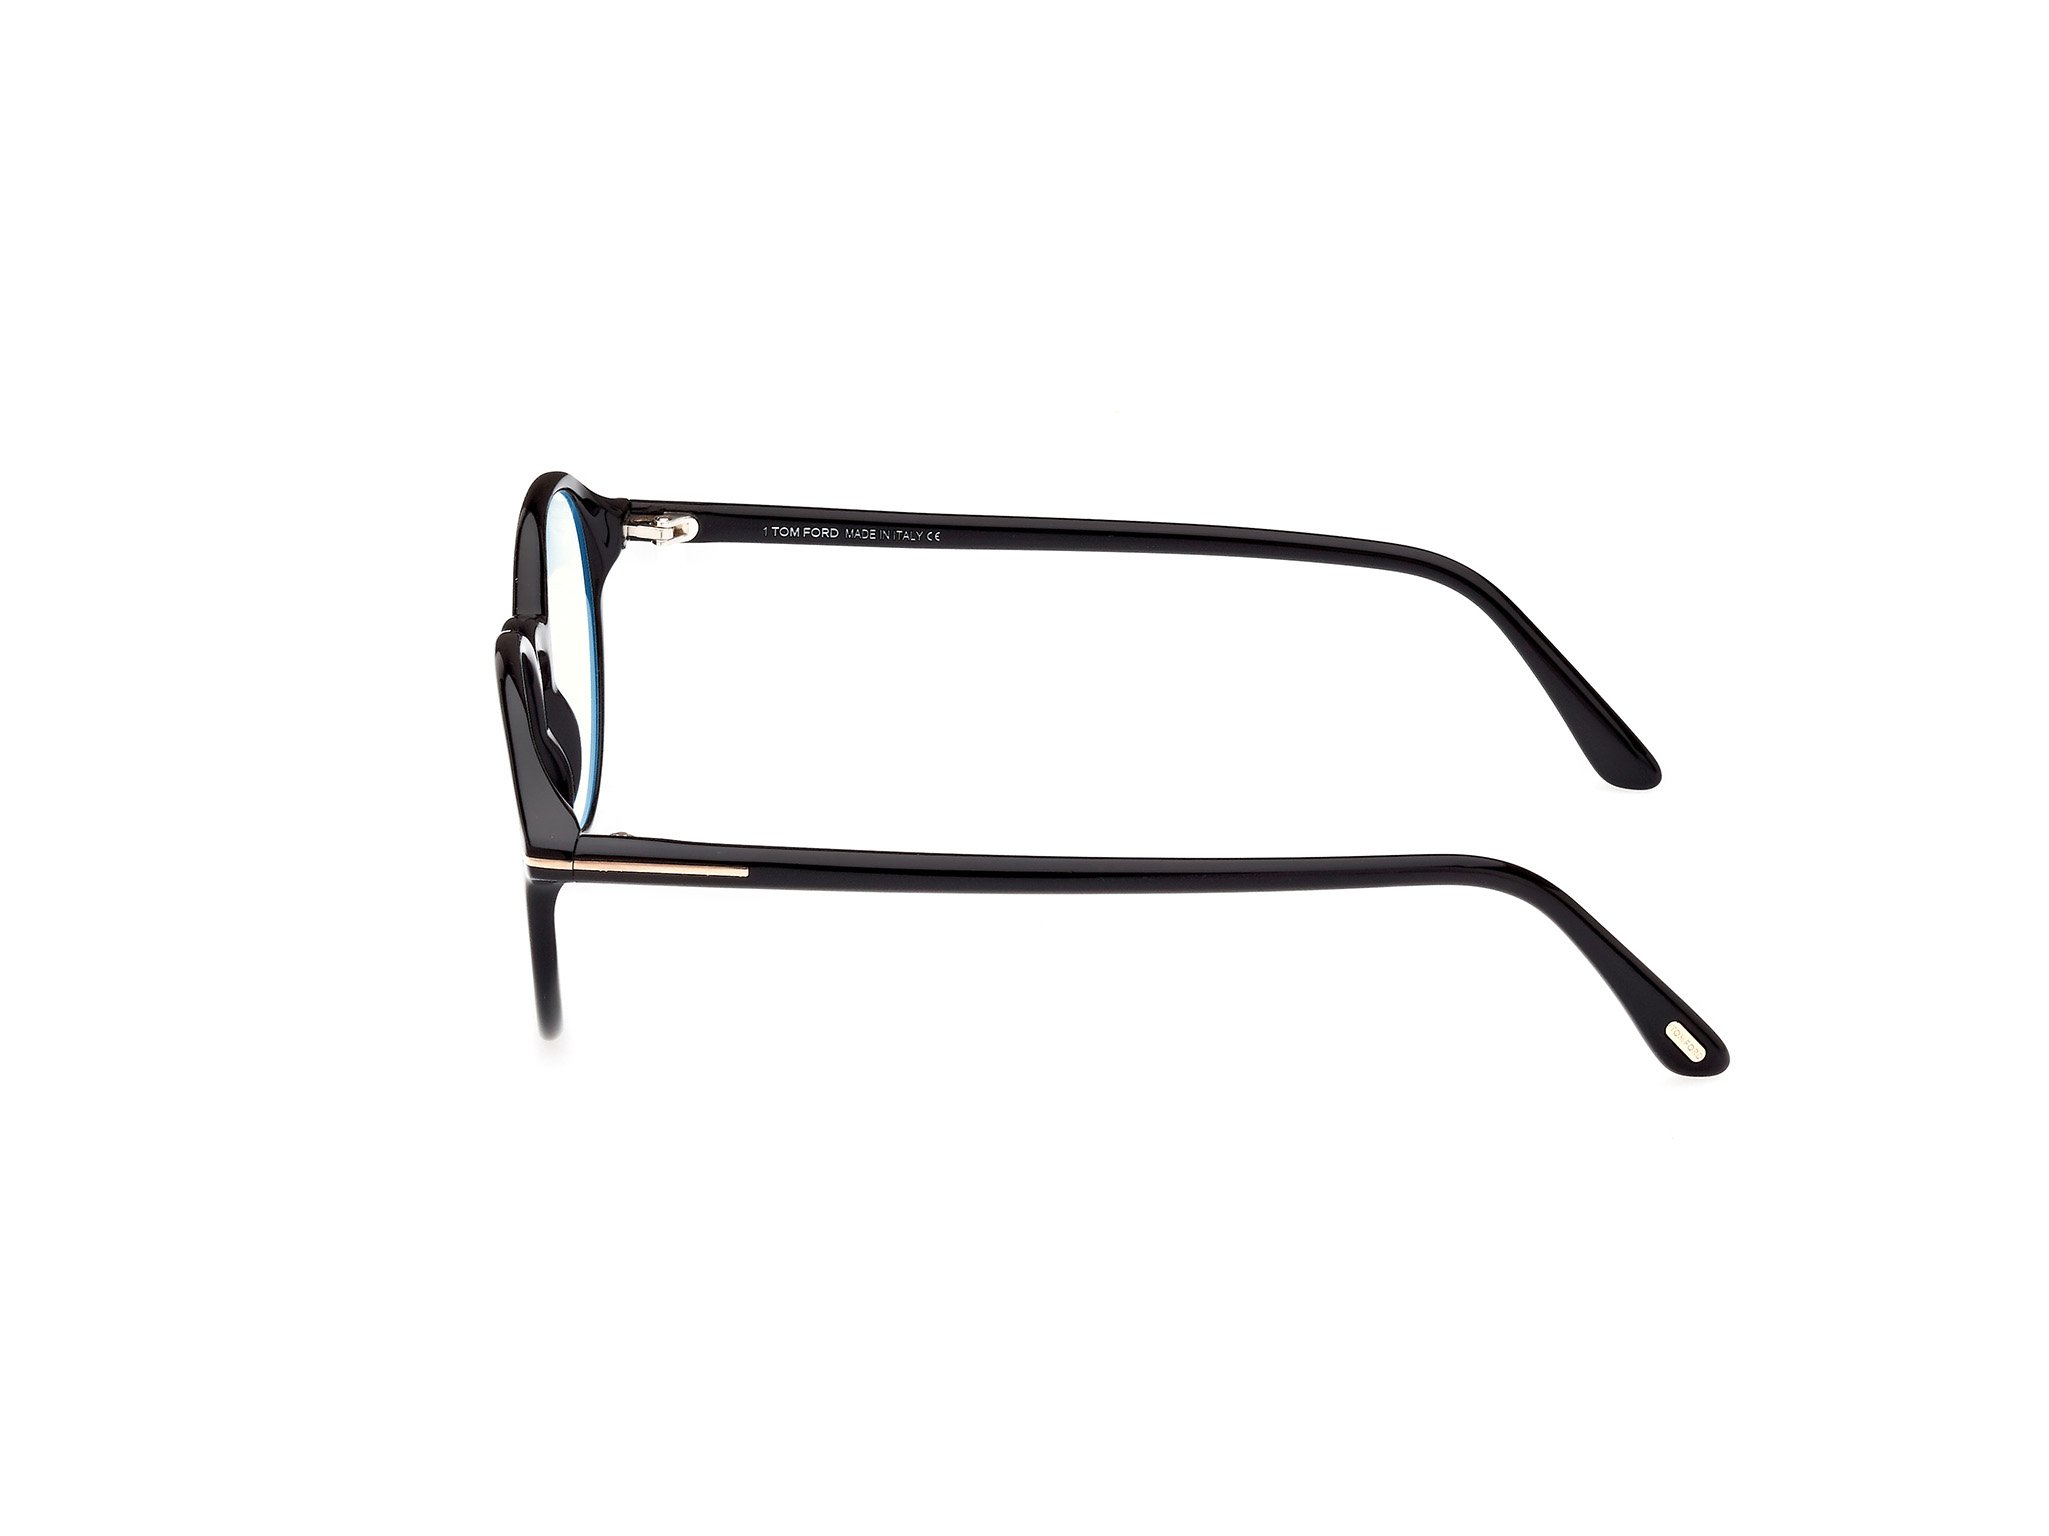 Das Bild zeigt die Korrektionsbrille FT5867-B 001 von der Marke Tom Ford in schwarz.